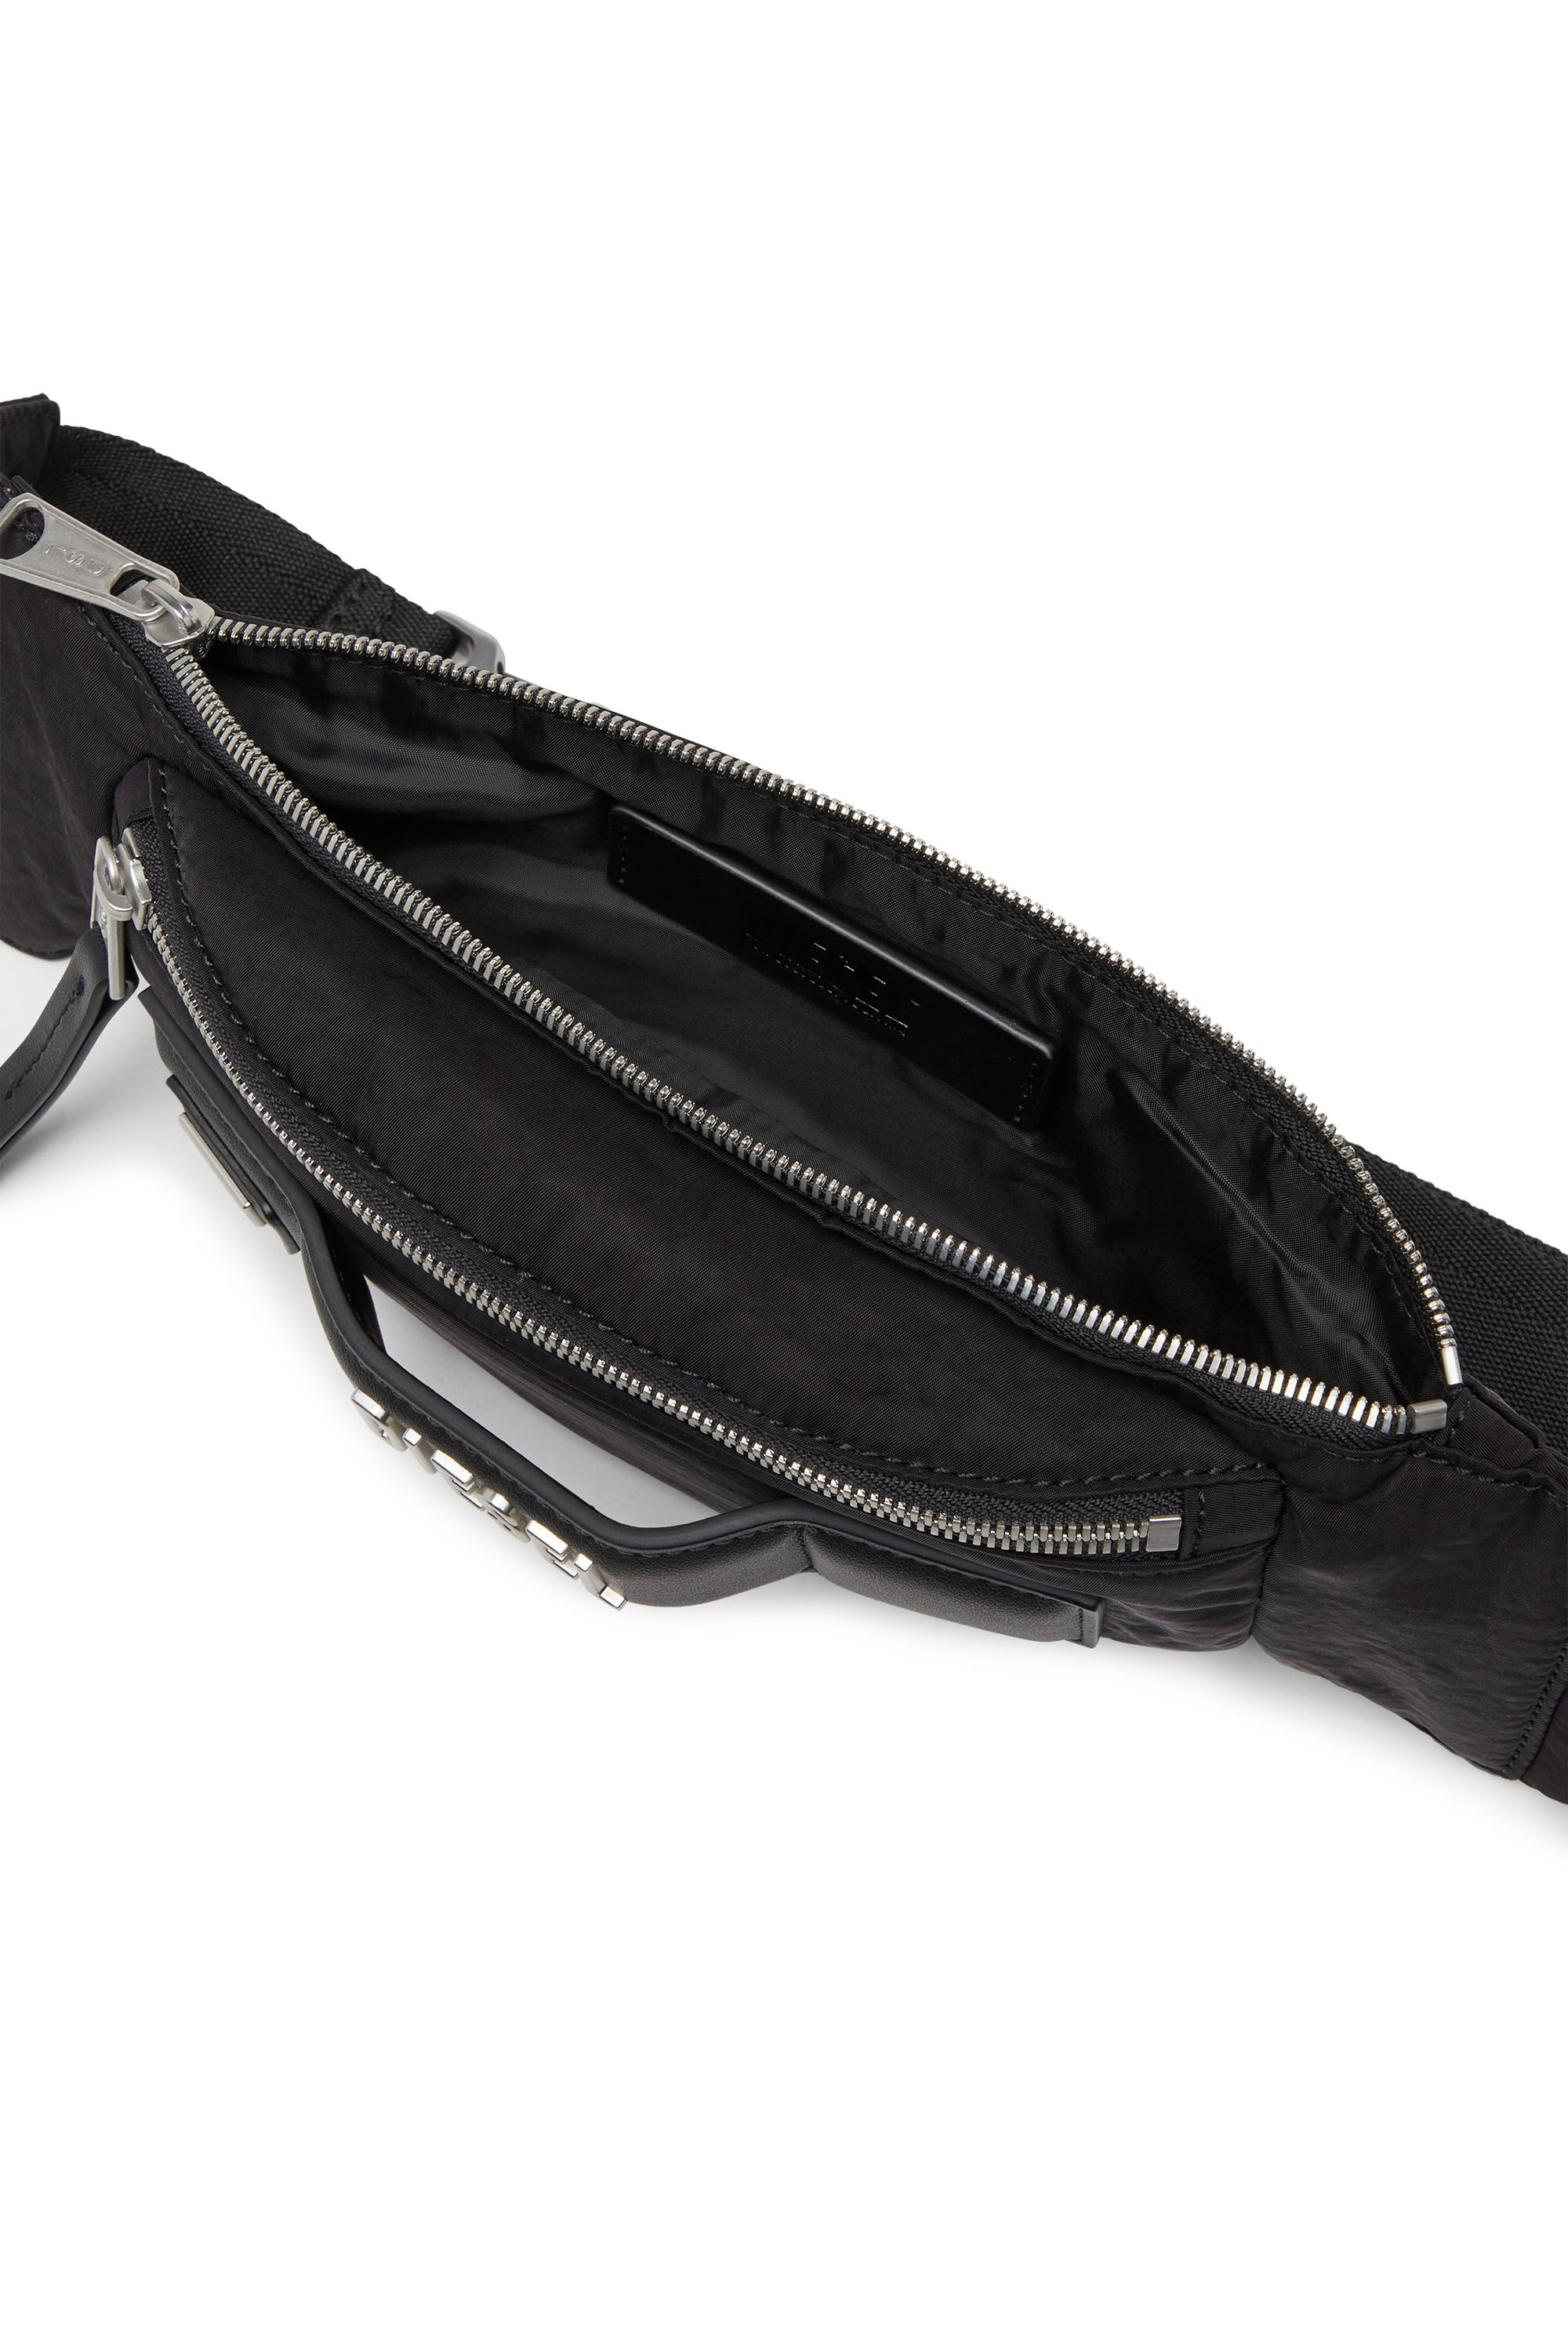 LOGOS BELT BAG Logos Belt Bag - Belt bag in recycled nylon 